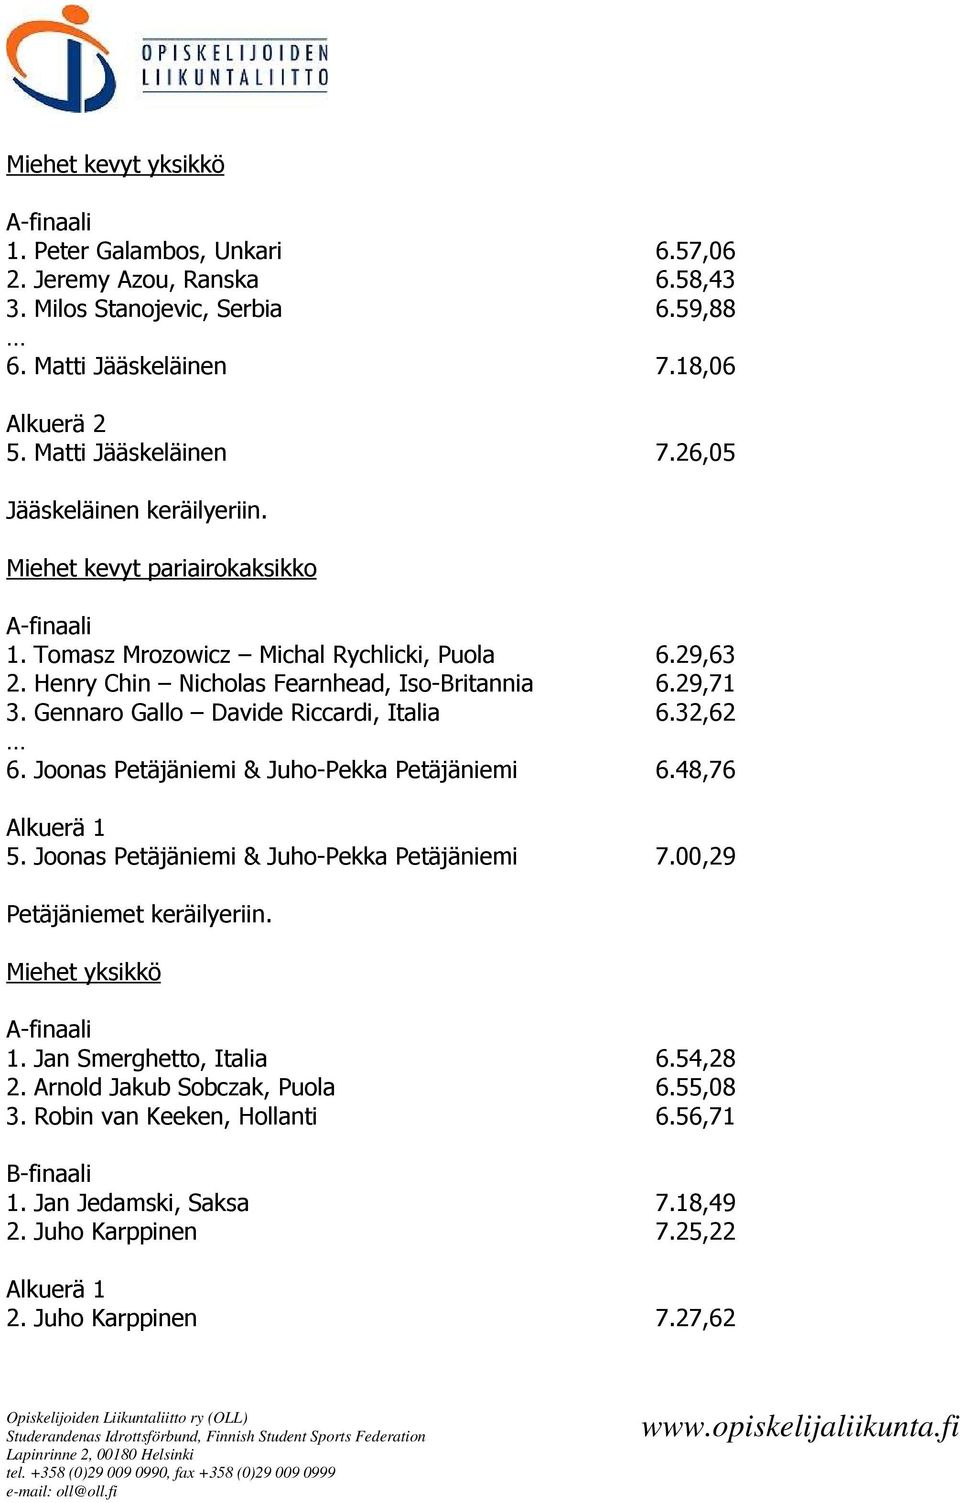 Joonas Petäjäniemi & Juho-Pekka Petäjäniemi 6.48,76 Alkuerä 1 5. Joonas Petäjäniemi & Juho-Pekka Petäjäniemi 7.00,29 Petäjäniemet keräilyeriin. Miehet yksikkö A-finaali 1. Jan Smerghetto, Italia 6.